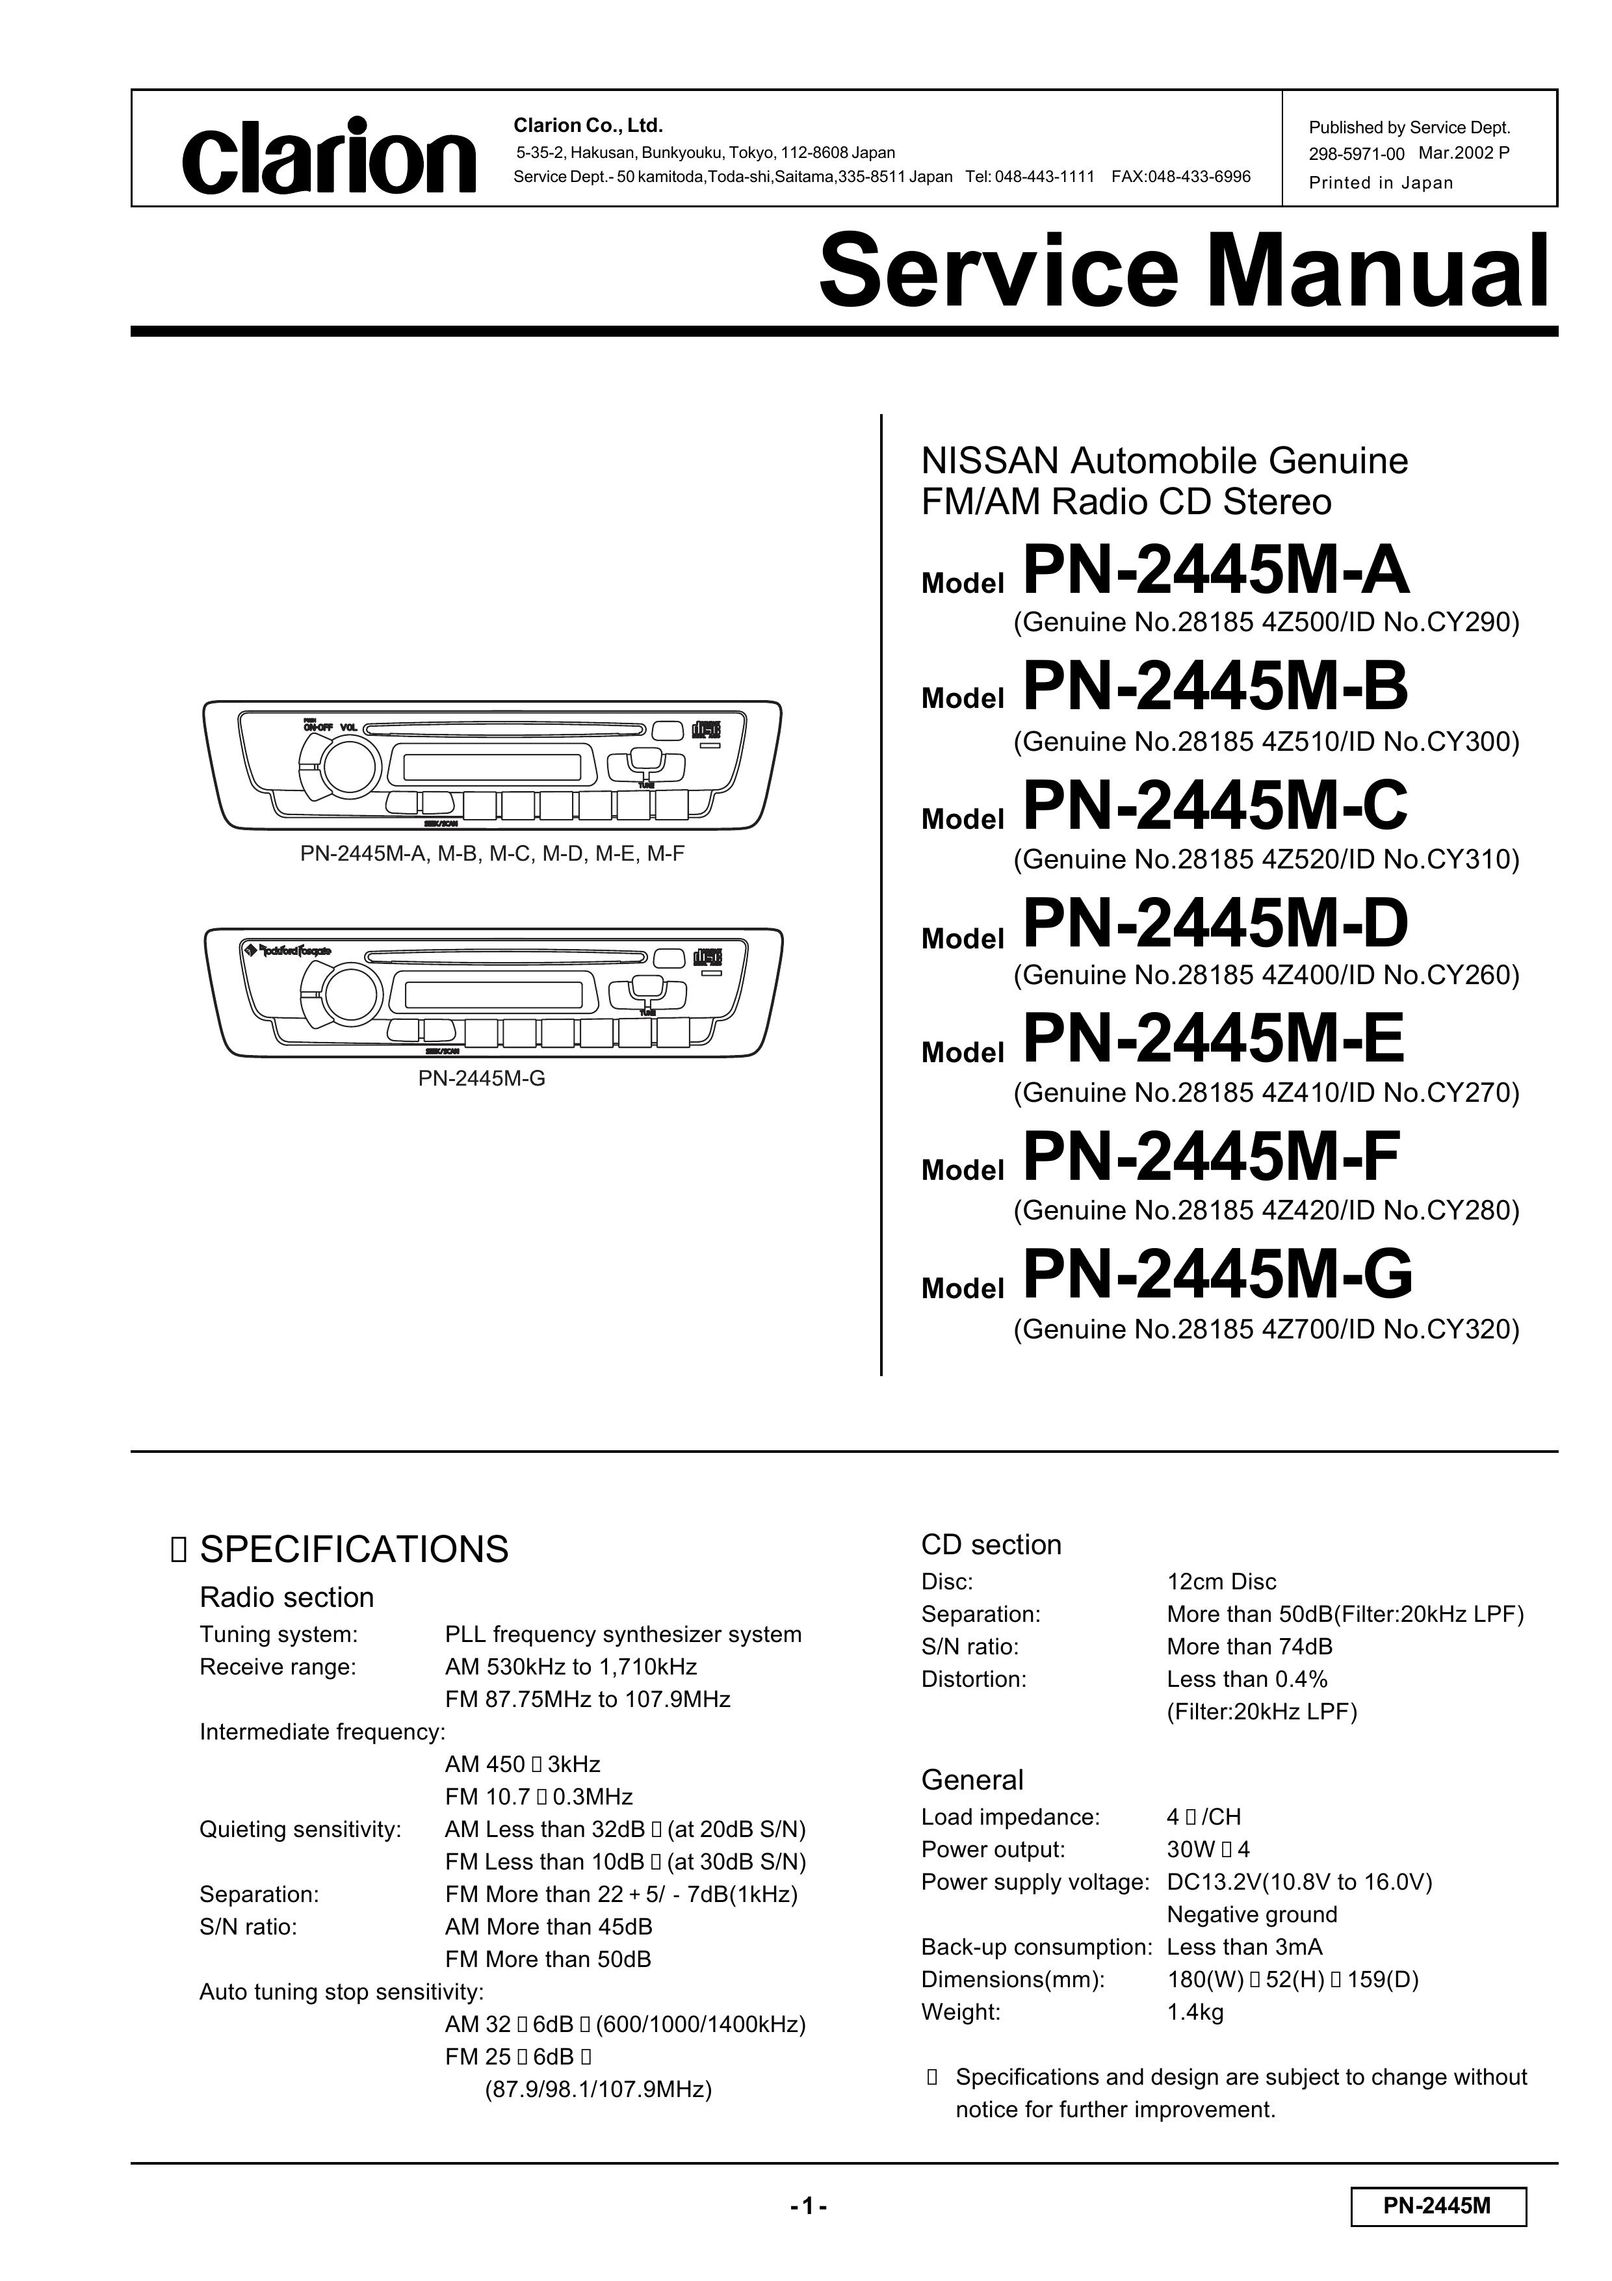 Clarion PN-2445M-F Radio User Manual